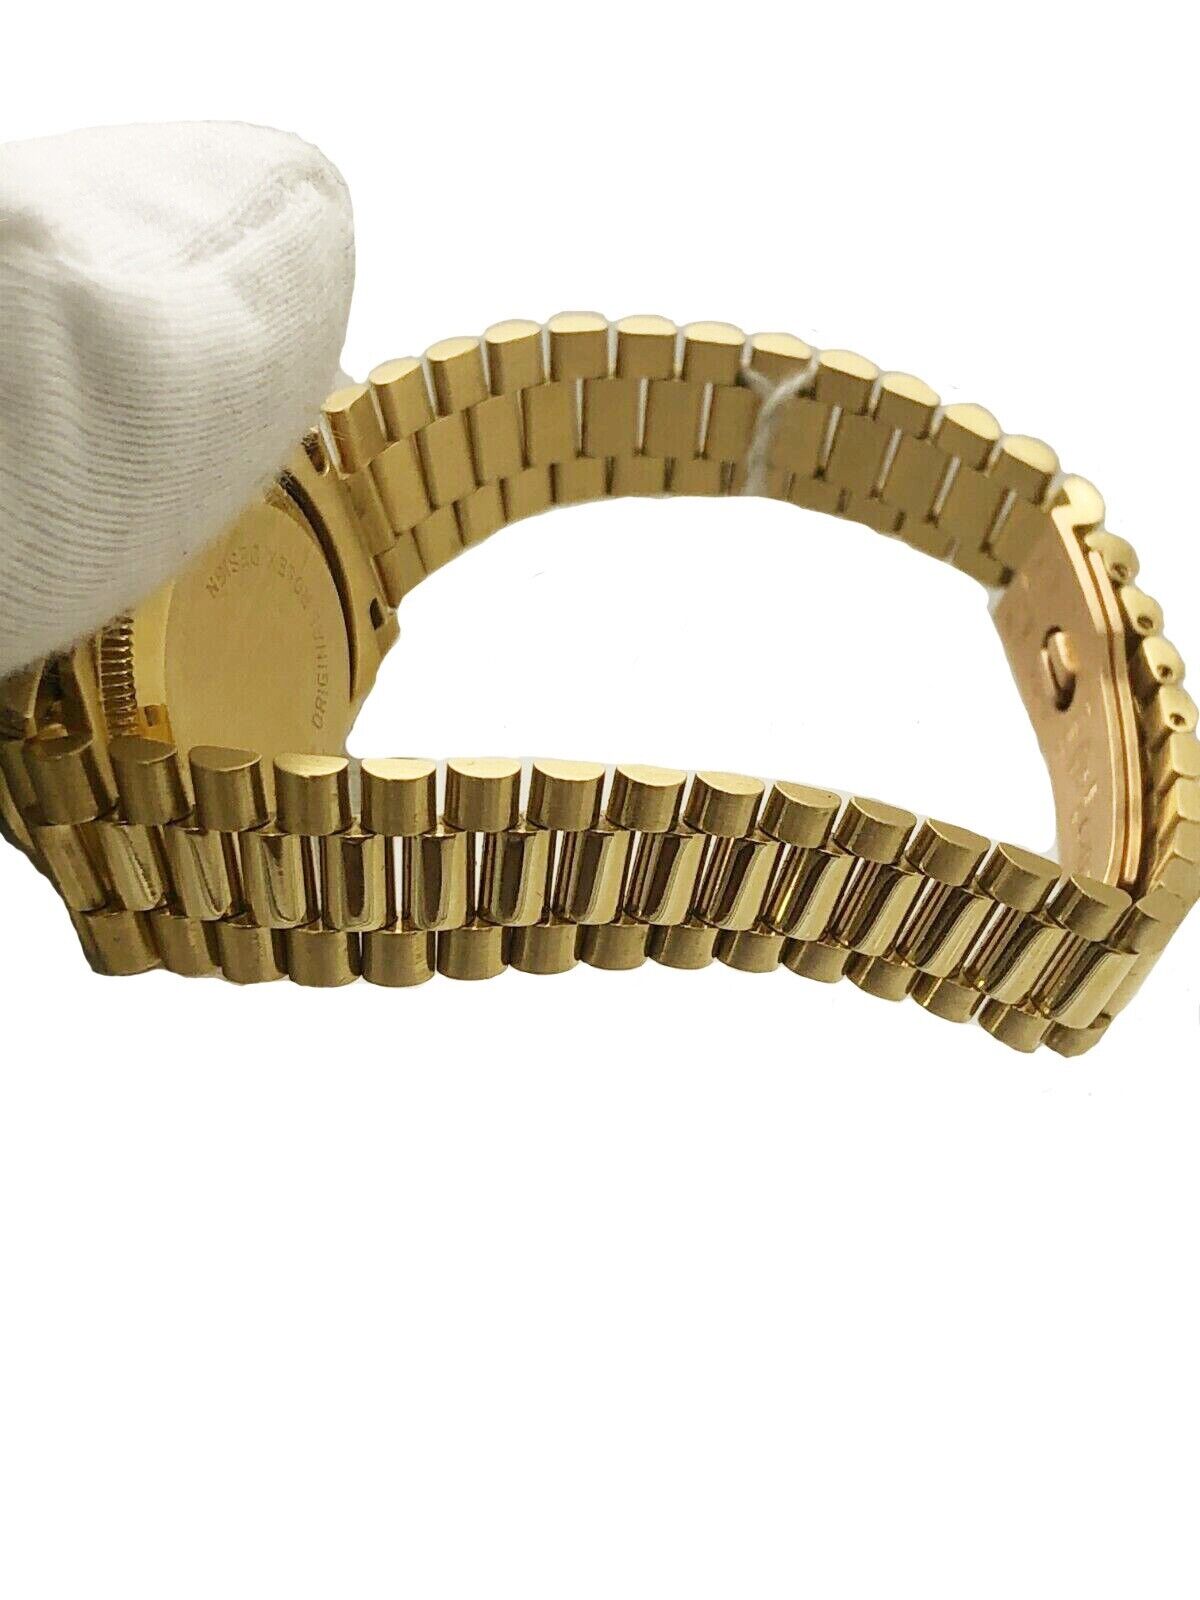 Rolex Datejust Ladies Original Diamond Watch